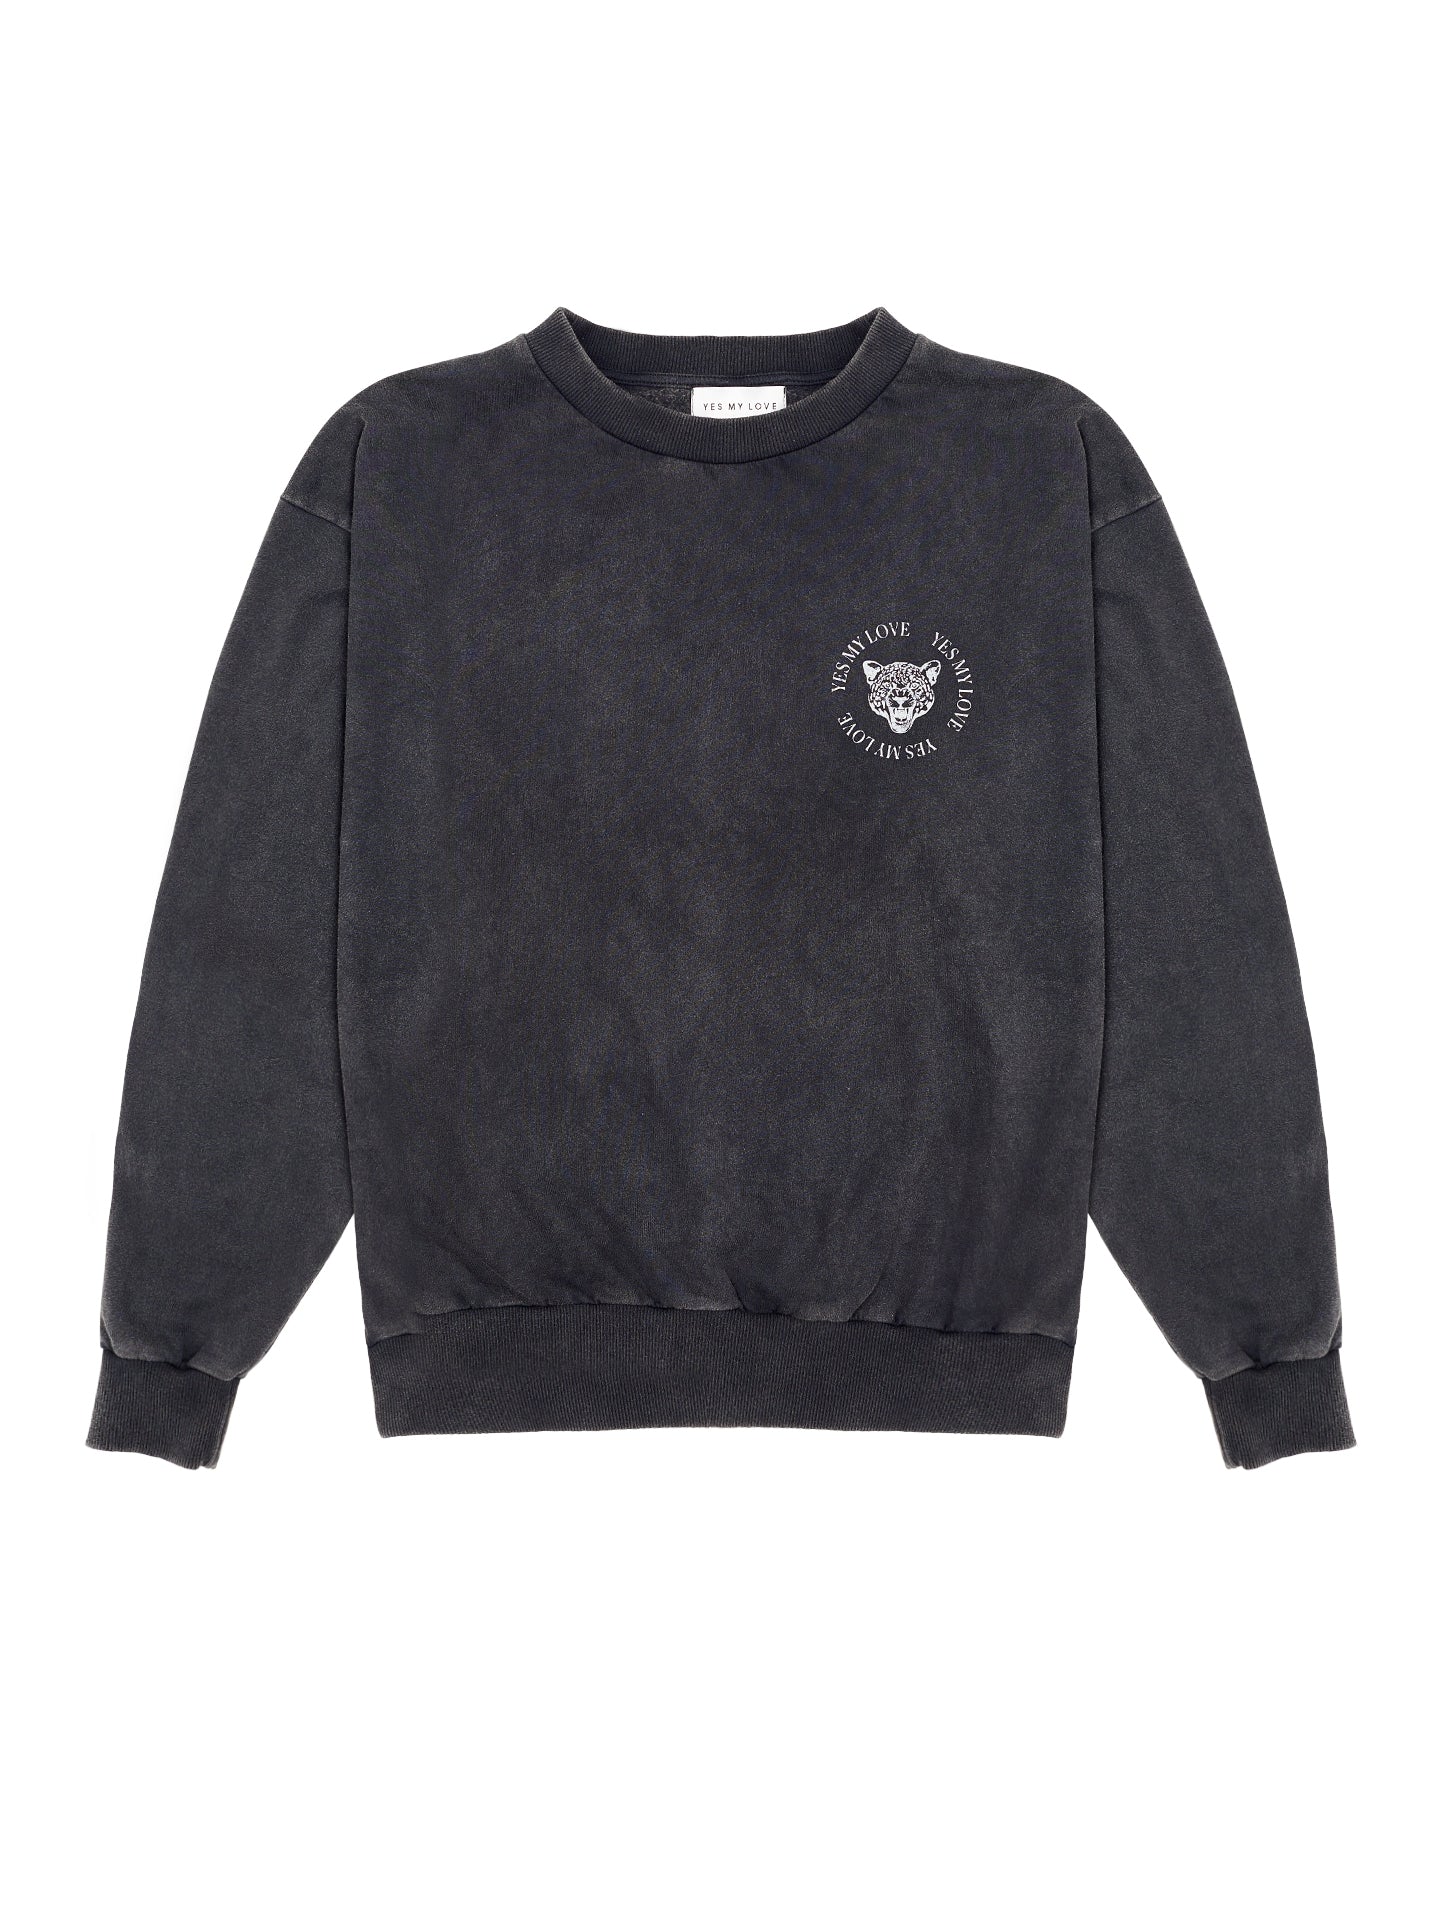 Leokopf Sweater - Vintage Schwarz